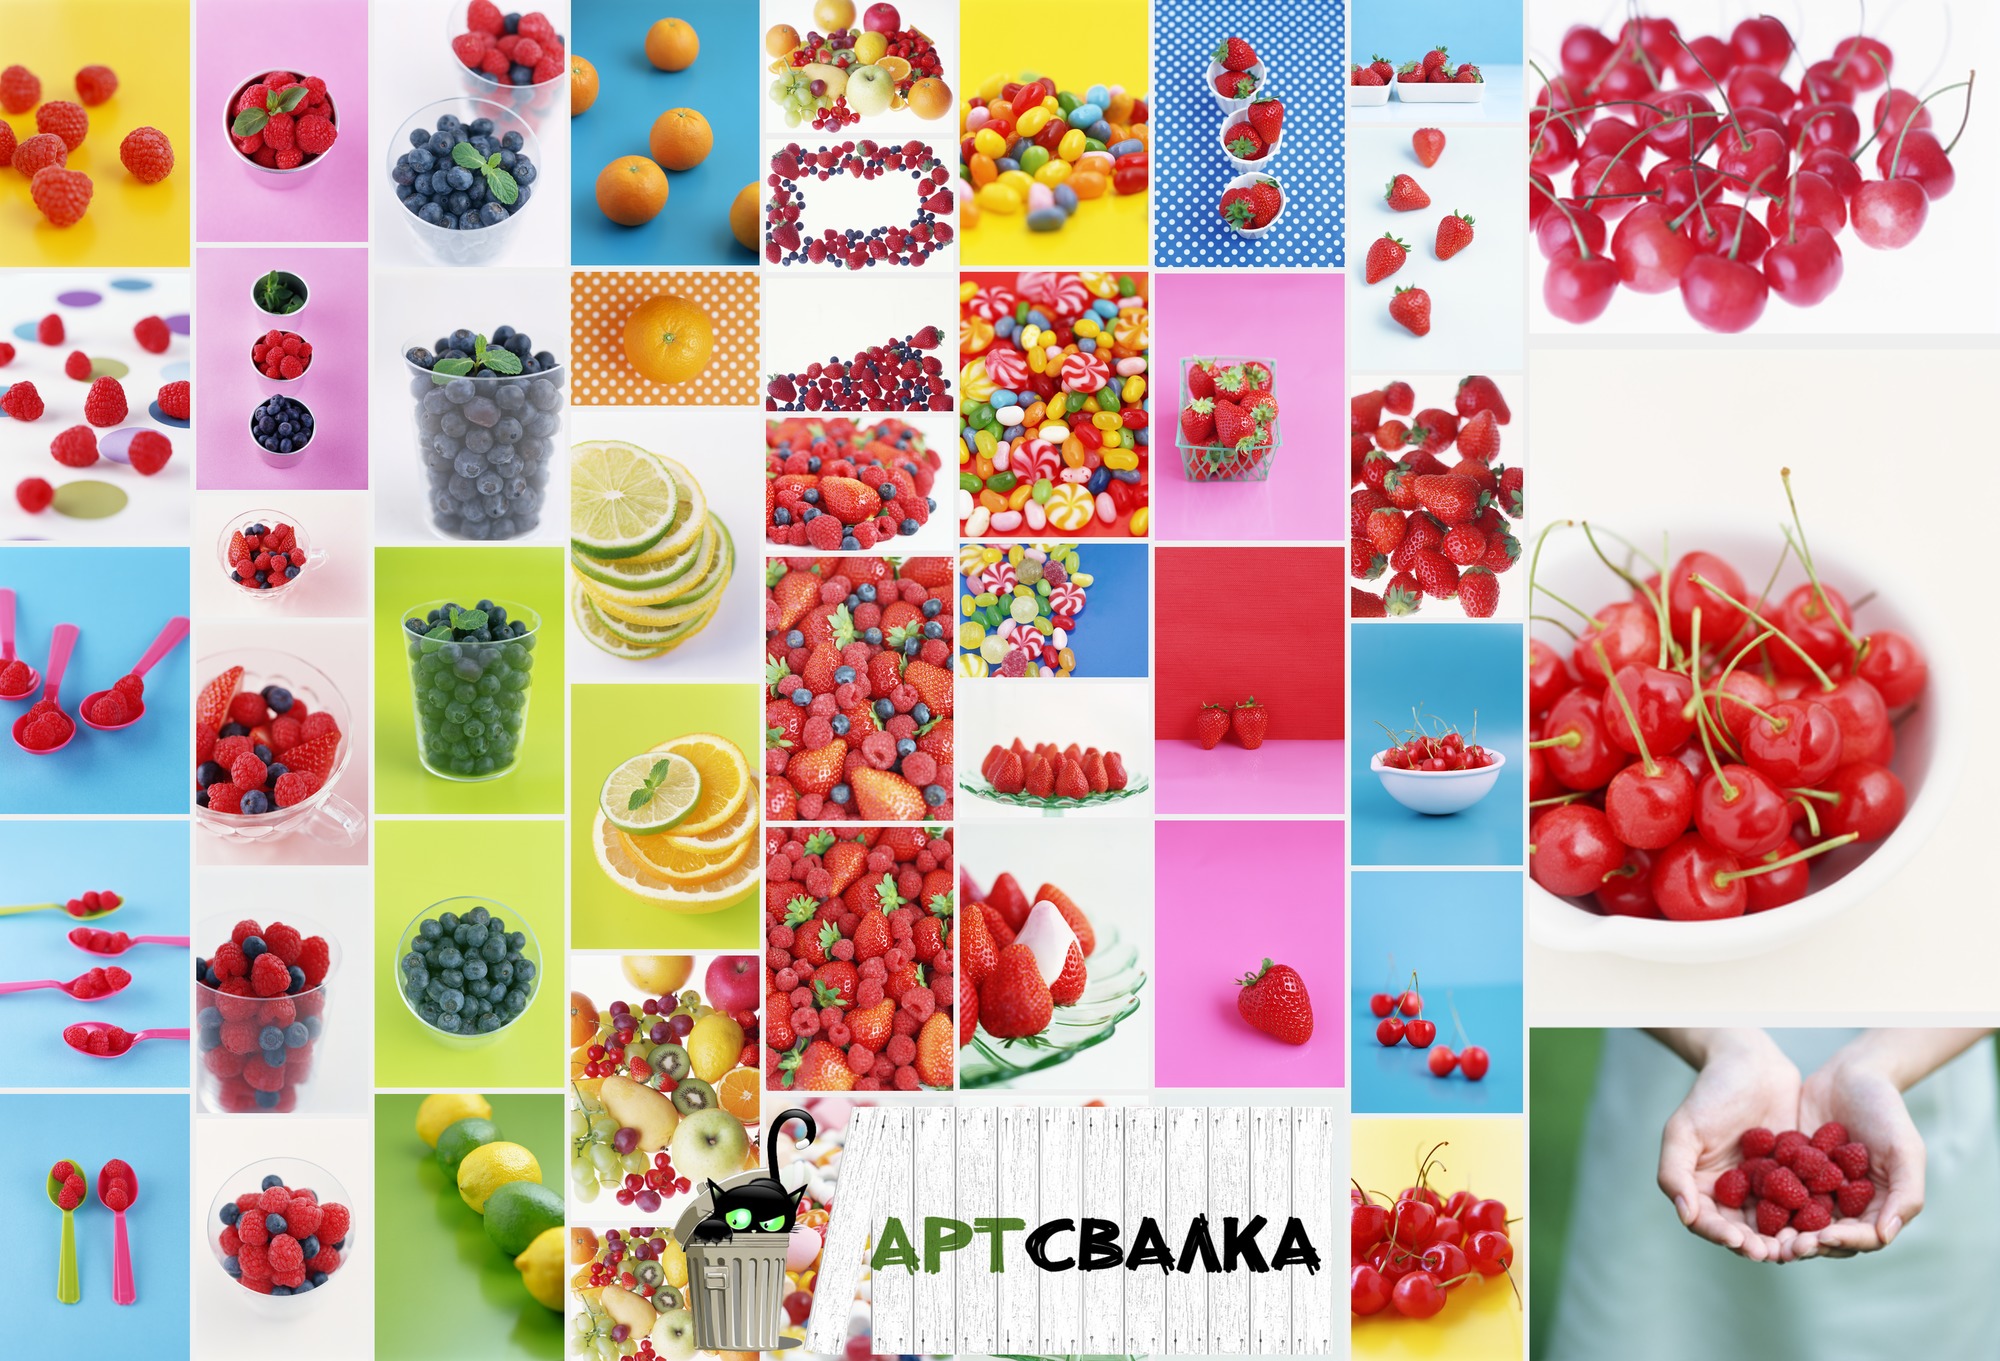 Тортики и различные сладости из фруктов и ягод. Часть 4 | Cakes and various sweets from fruits and berries. Part 4